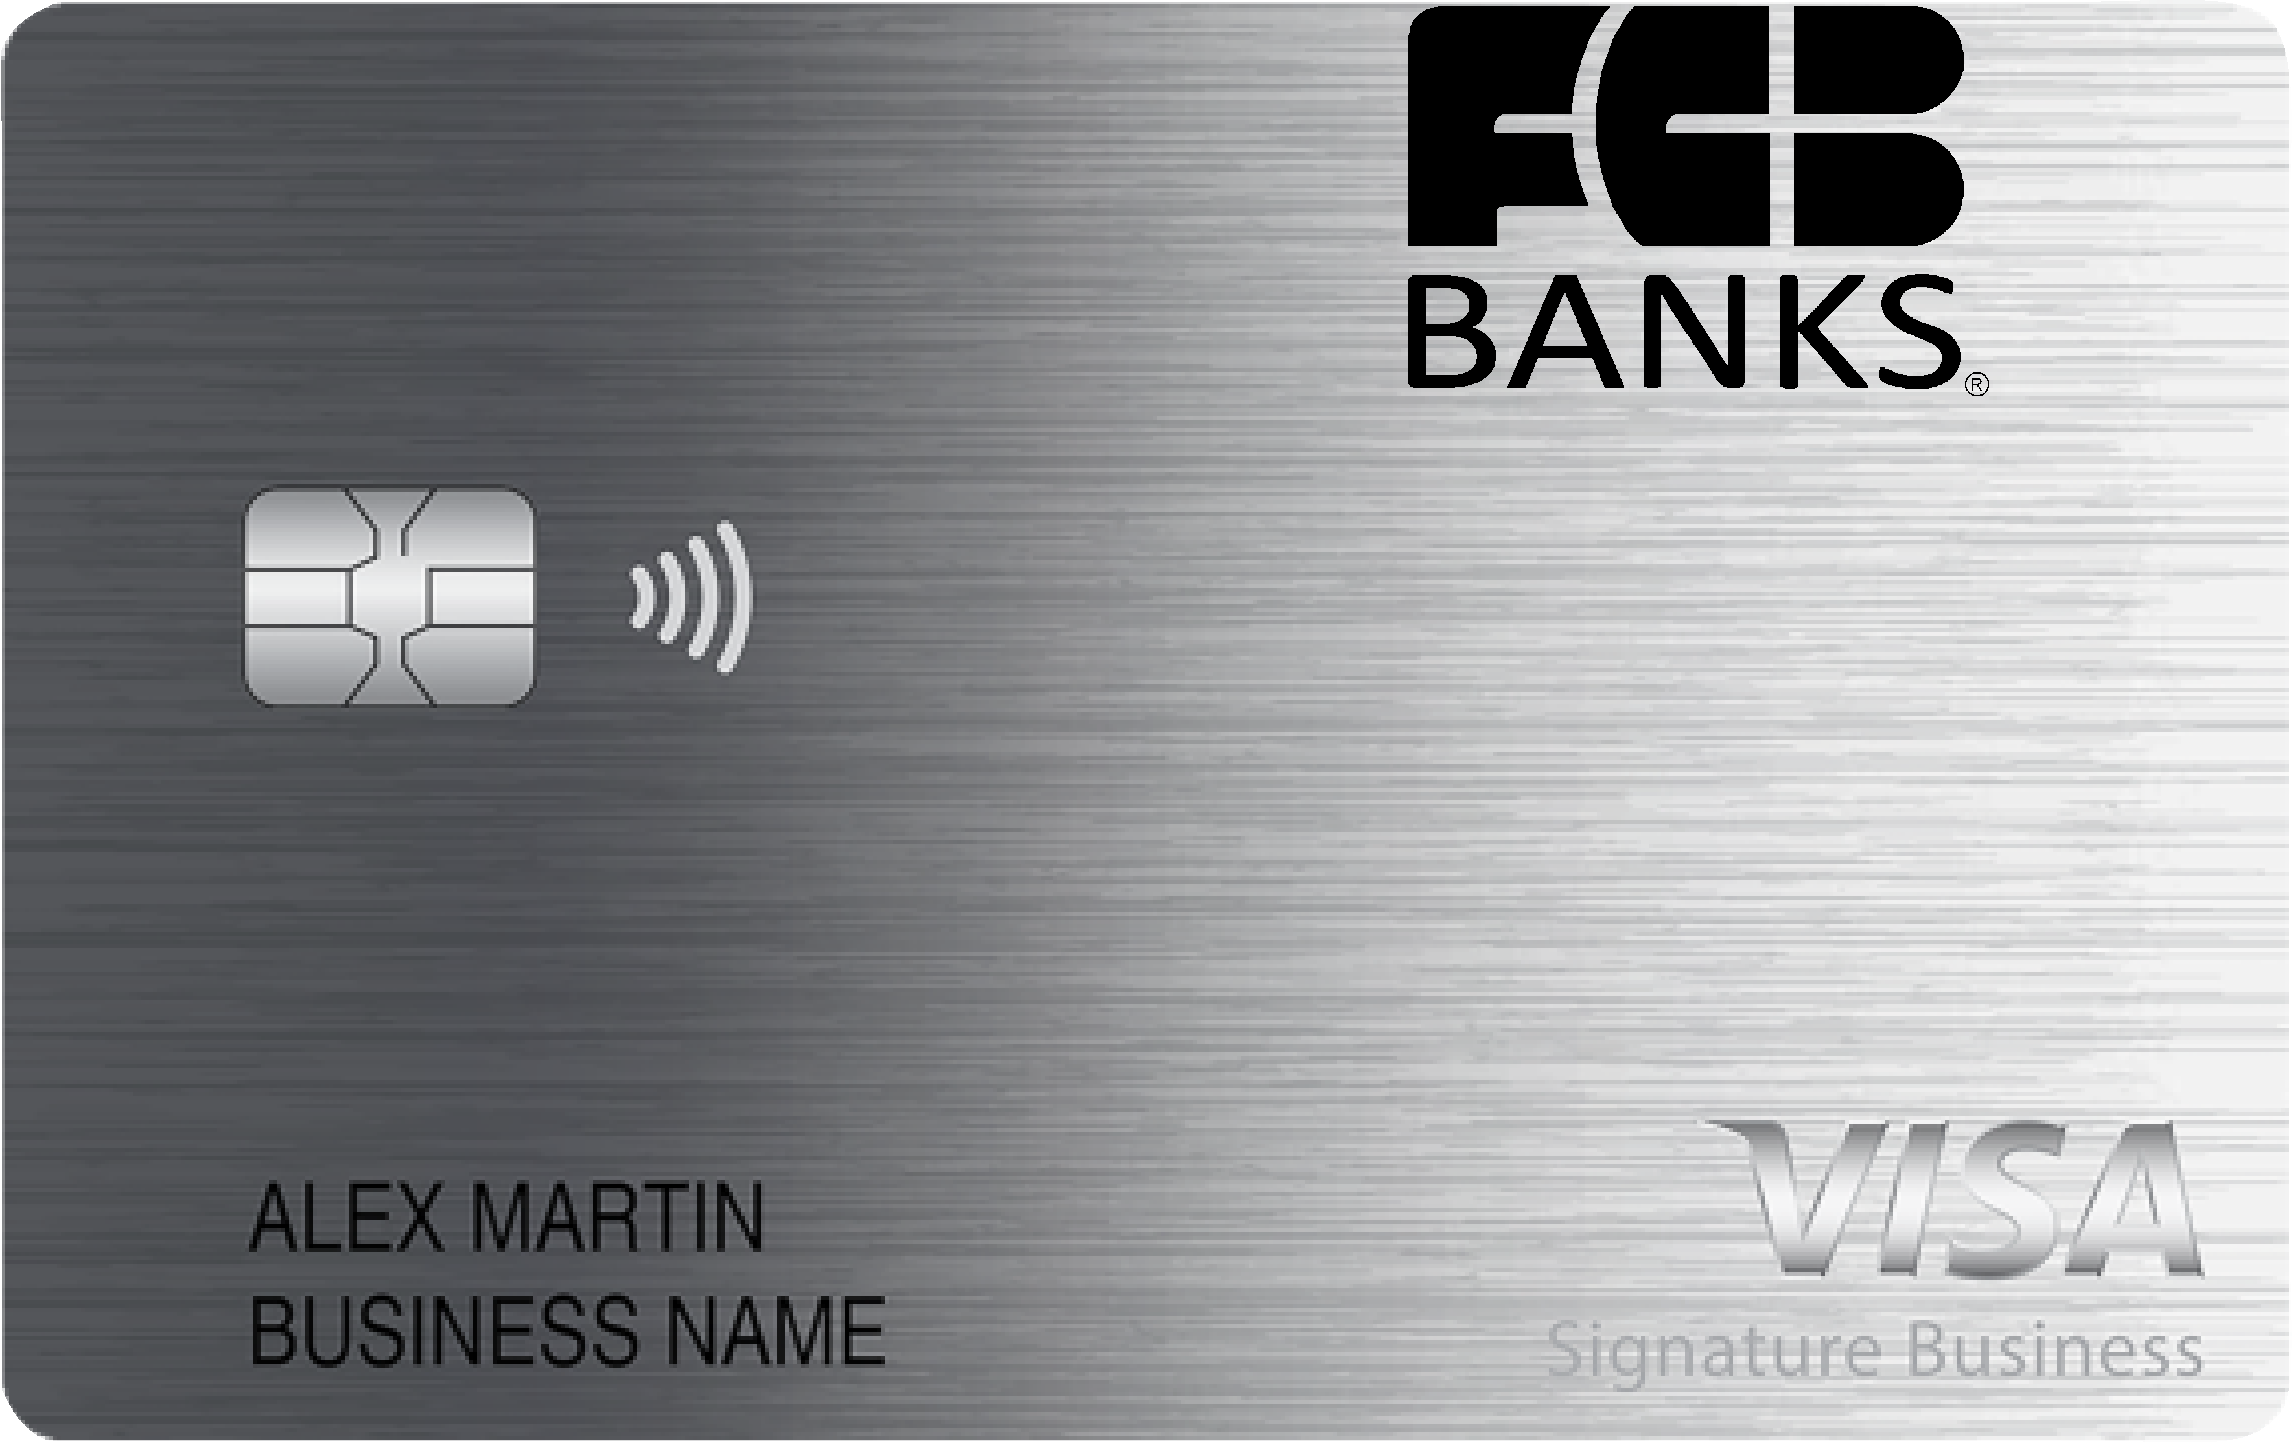 FCB Banks Smart Business Rewards Card